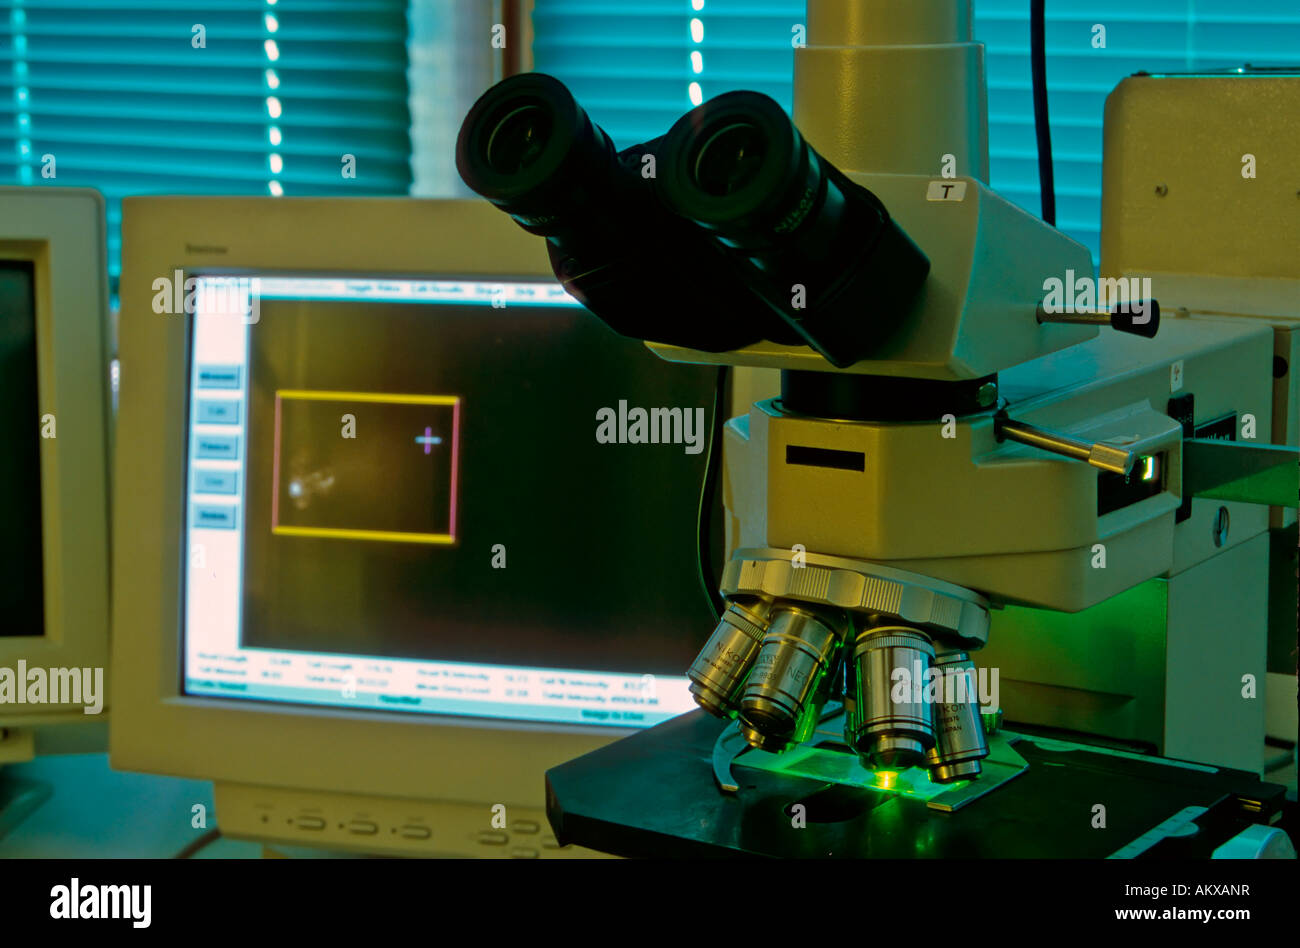 Analyse d'une expérience scientifique avec un microscope à fluorescence dans le laboratoire Banque D'Images